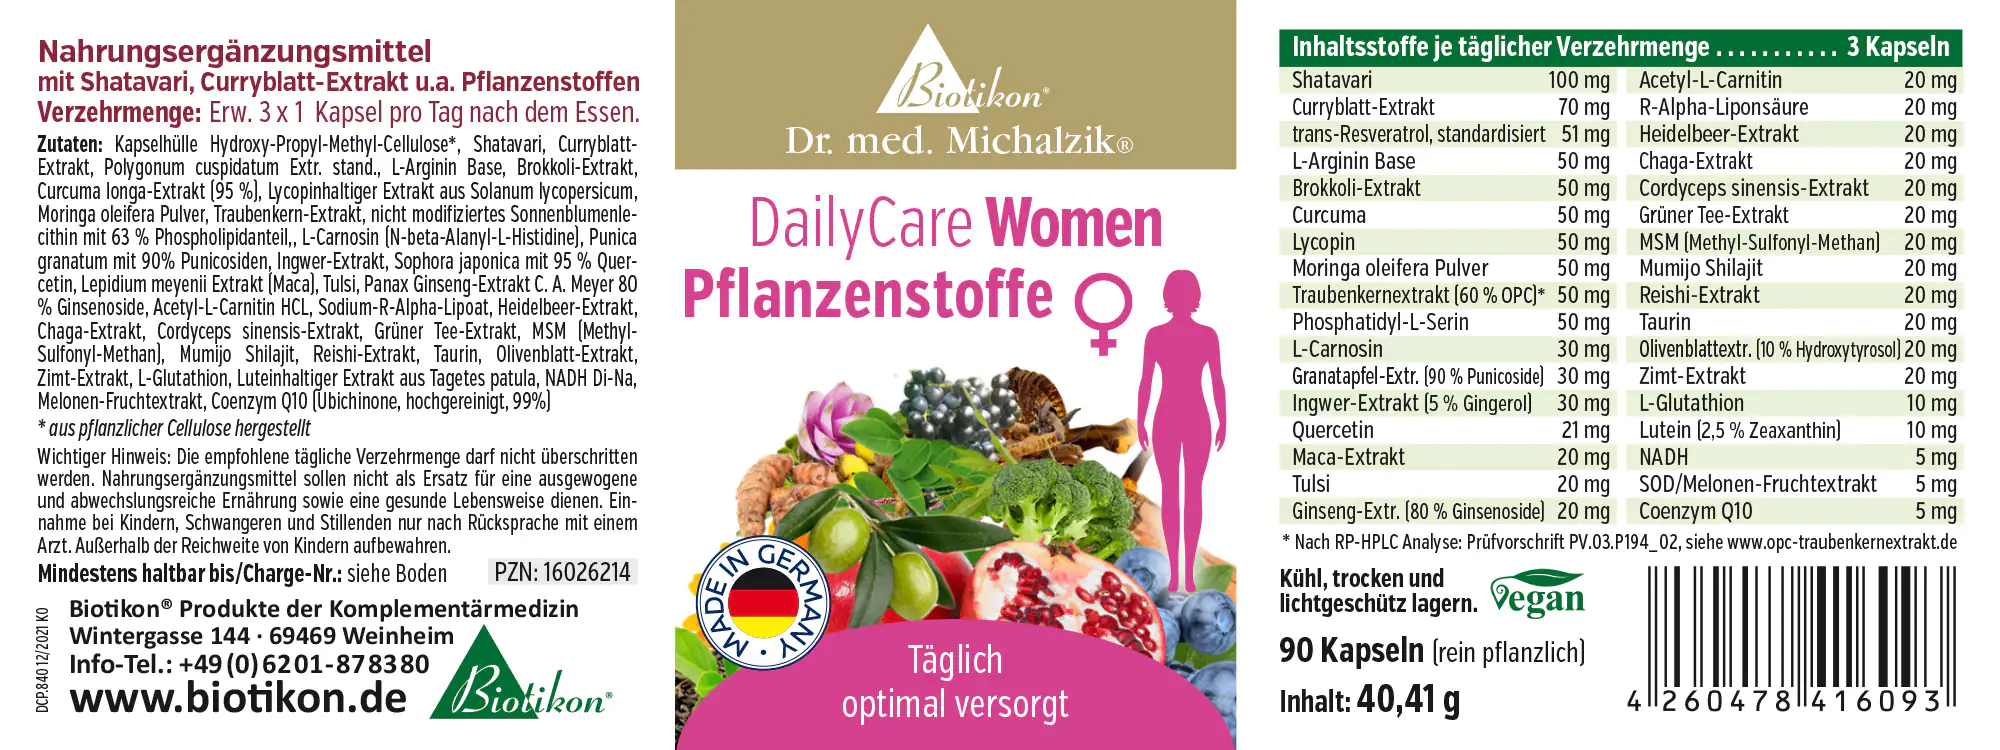 DailyCare Women substances végétales